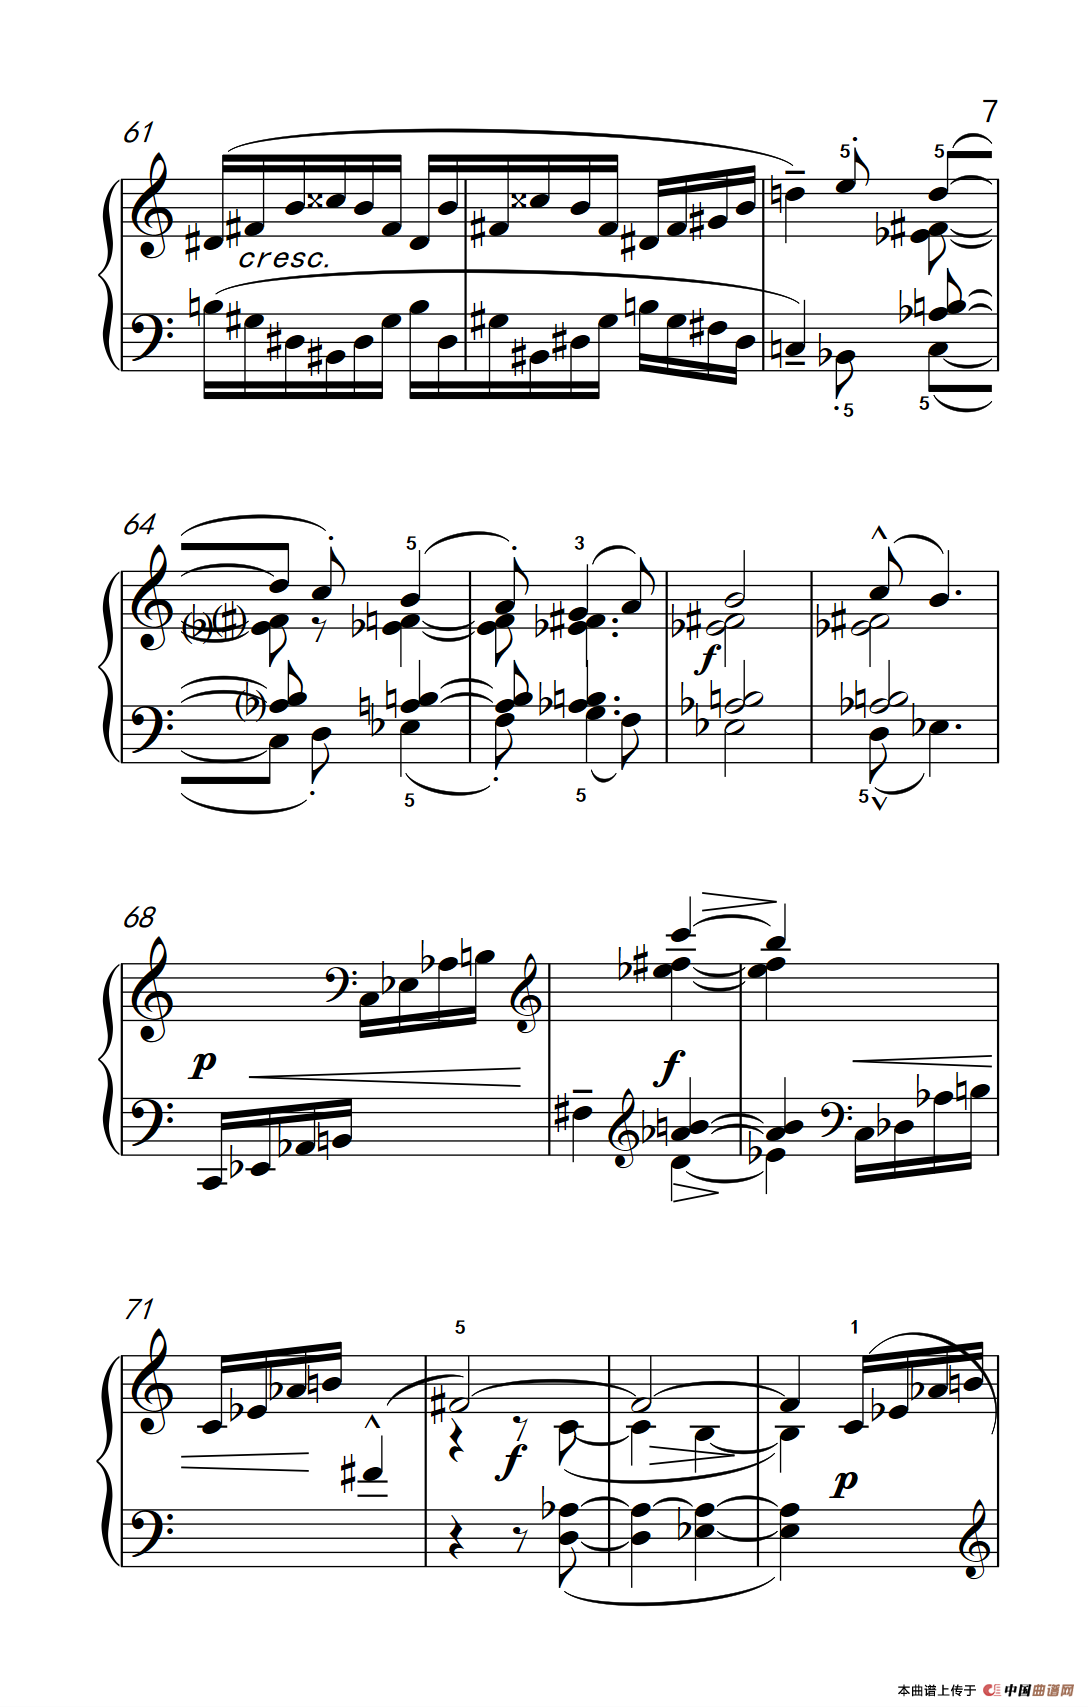 《分解琶音》钢琴曲谱图分享